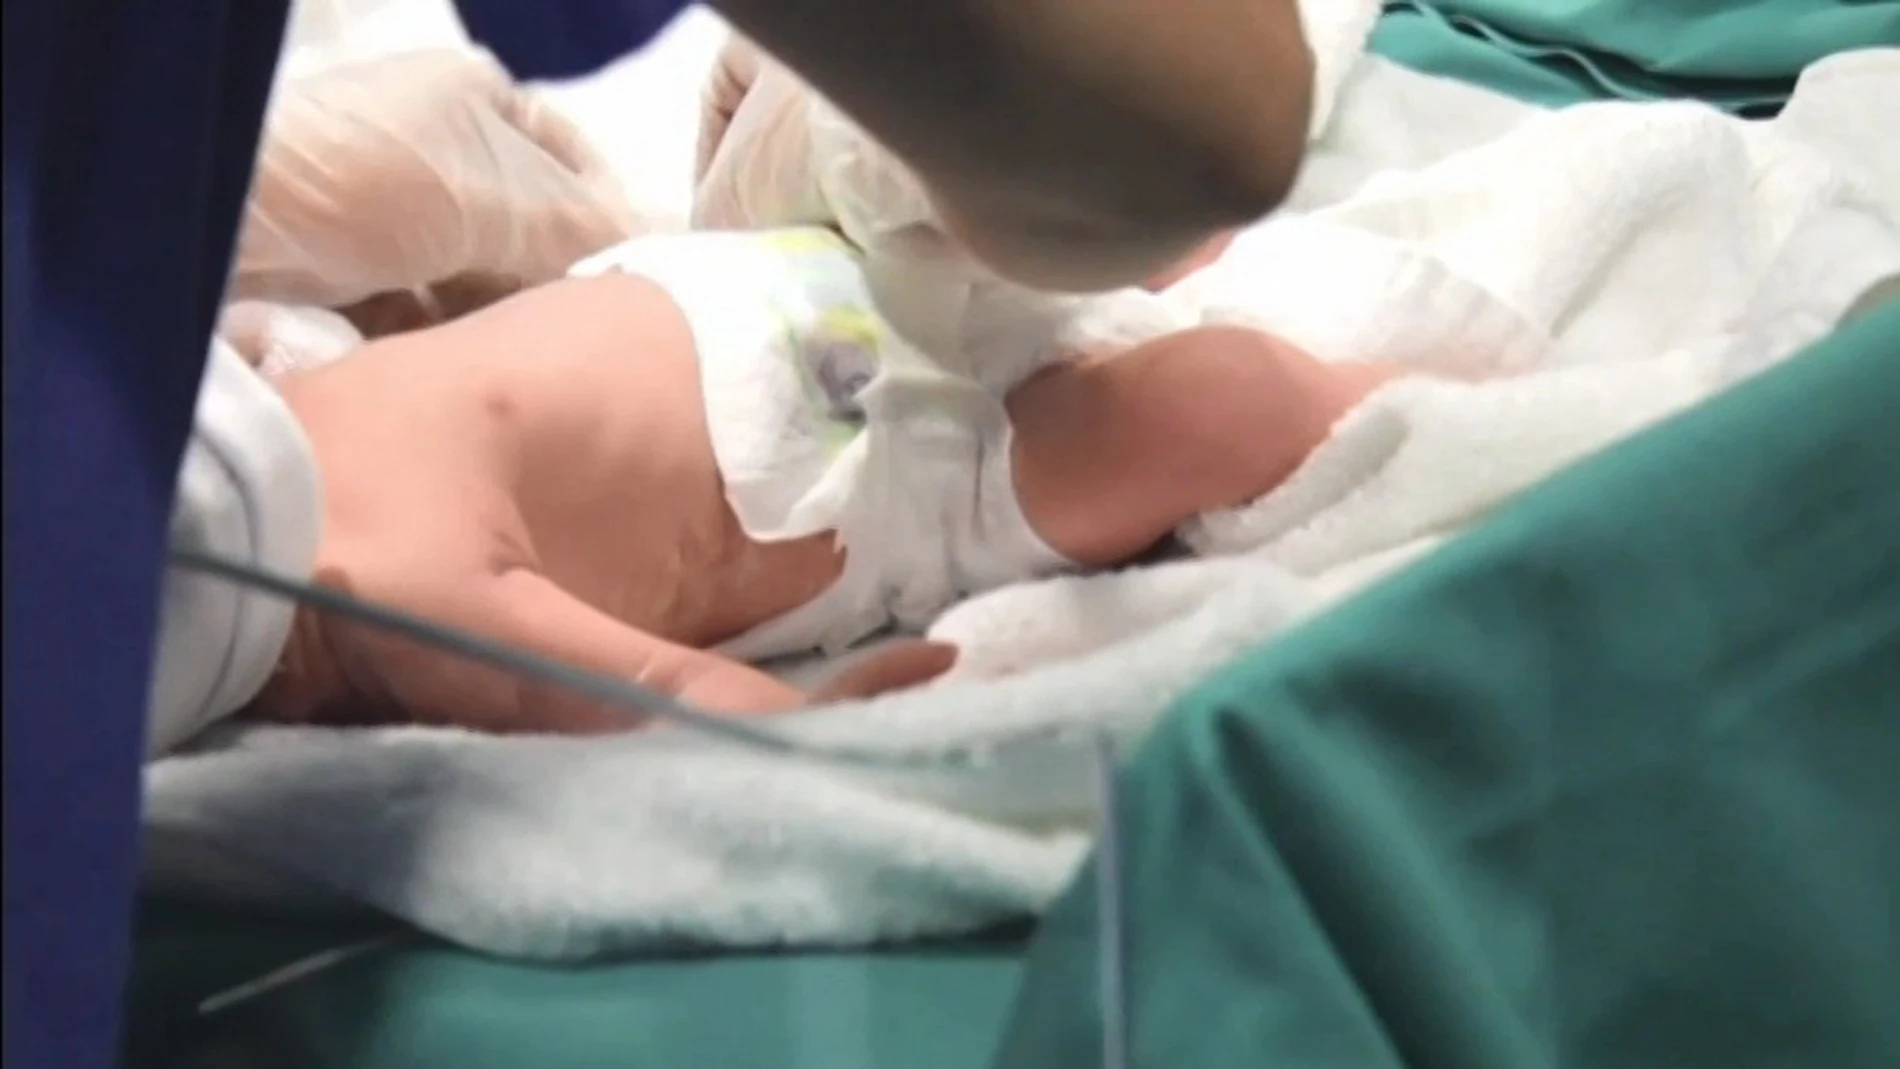 Imagen tomada del vídeo del parto cedido por Recoletas Red Hospitalaria